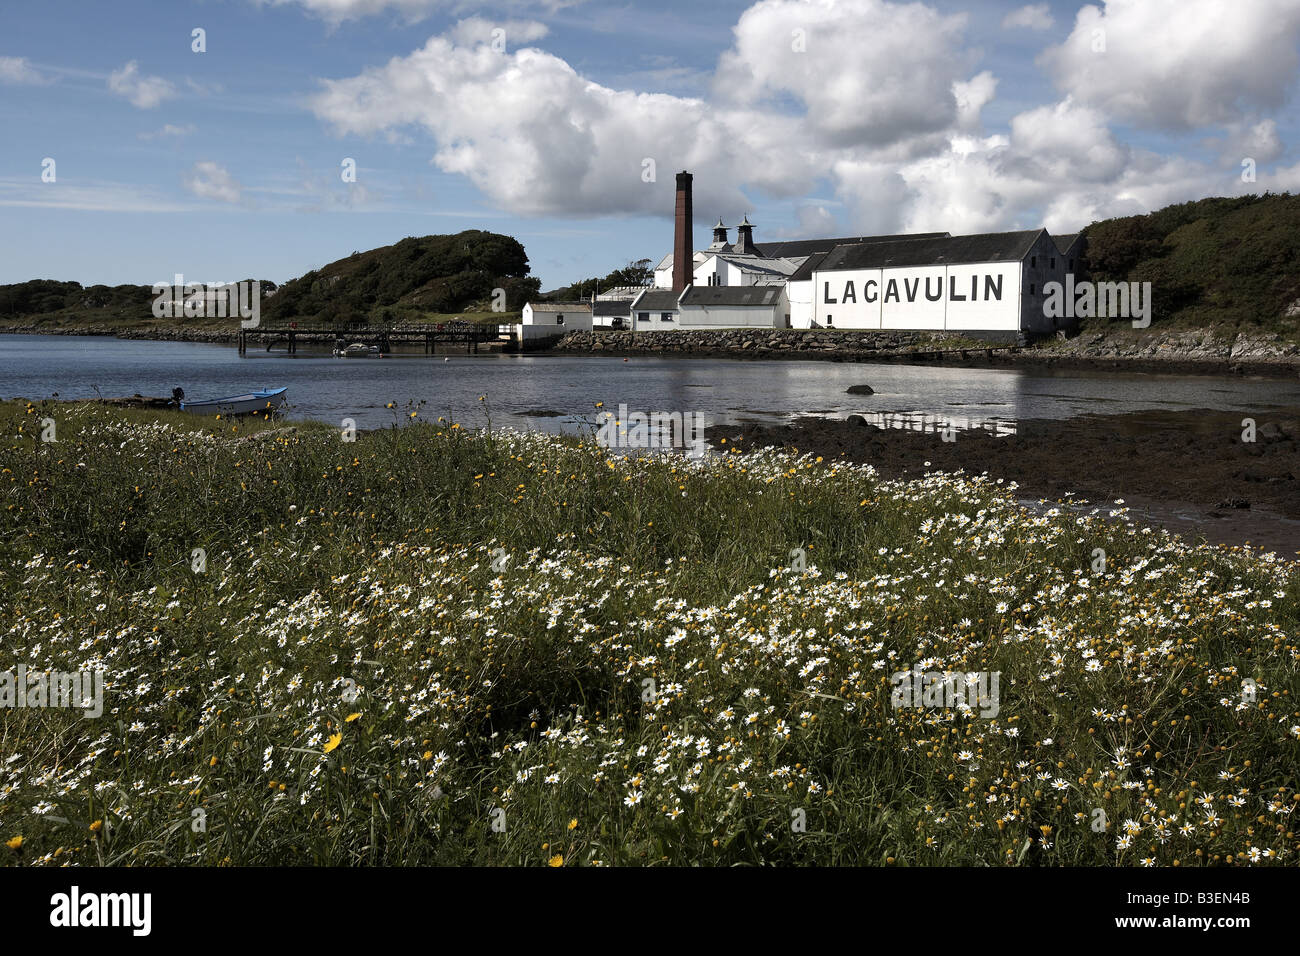 Lagavulin whisky distillery Lagavulin Bay Isle of Islay Scotland UK Stock Photo